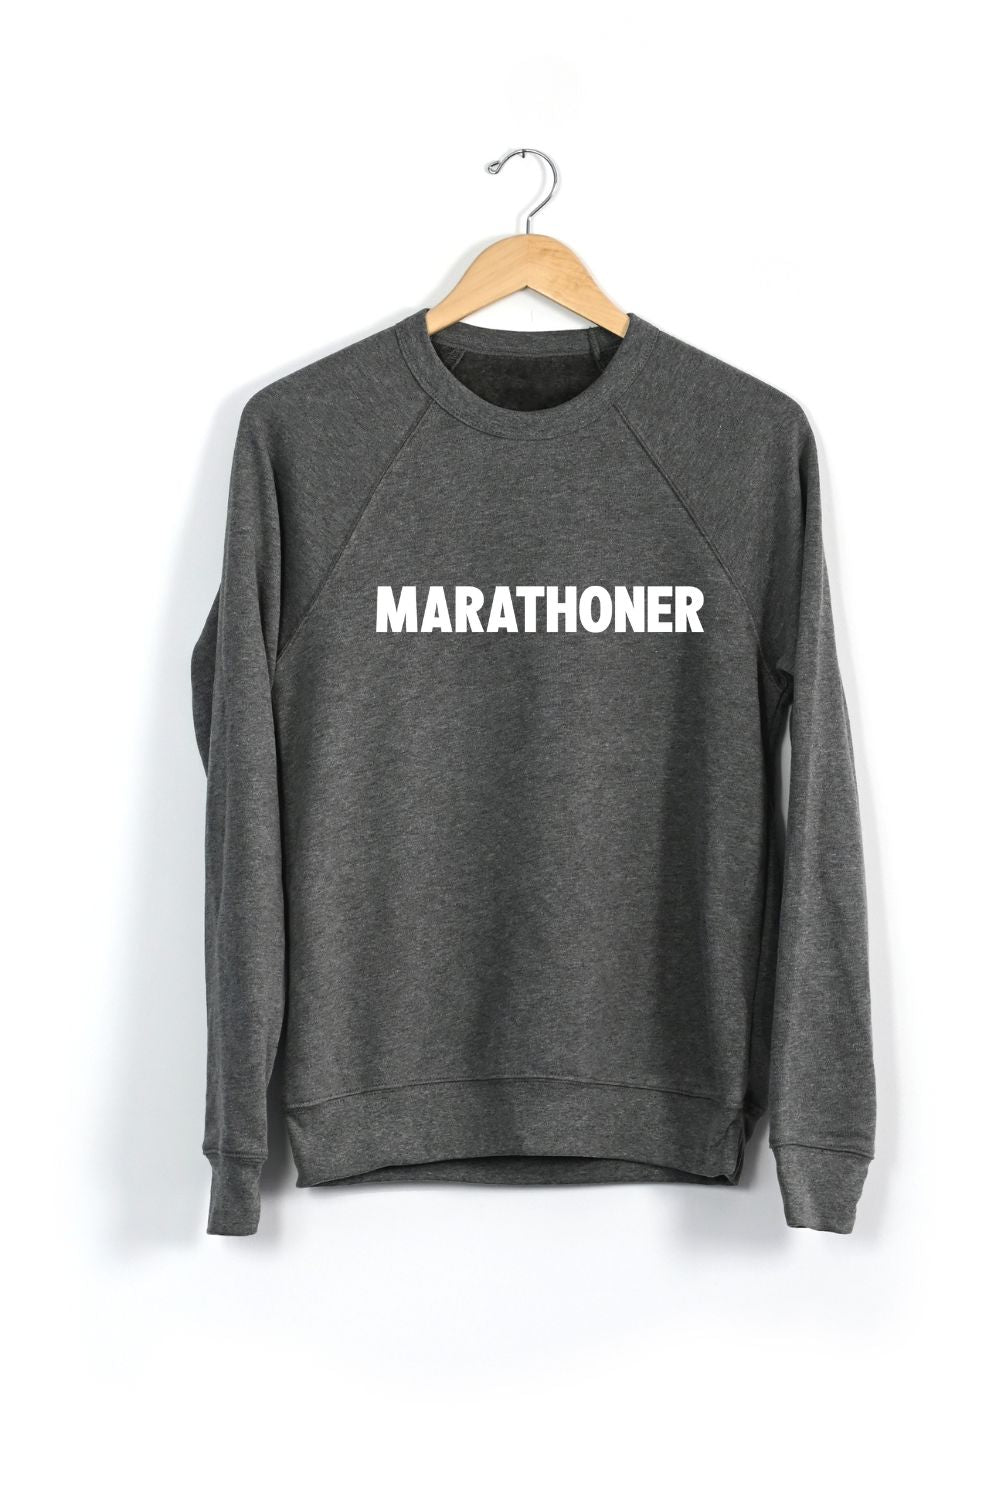 Marathoner Sweatshirt